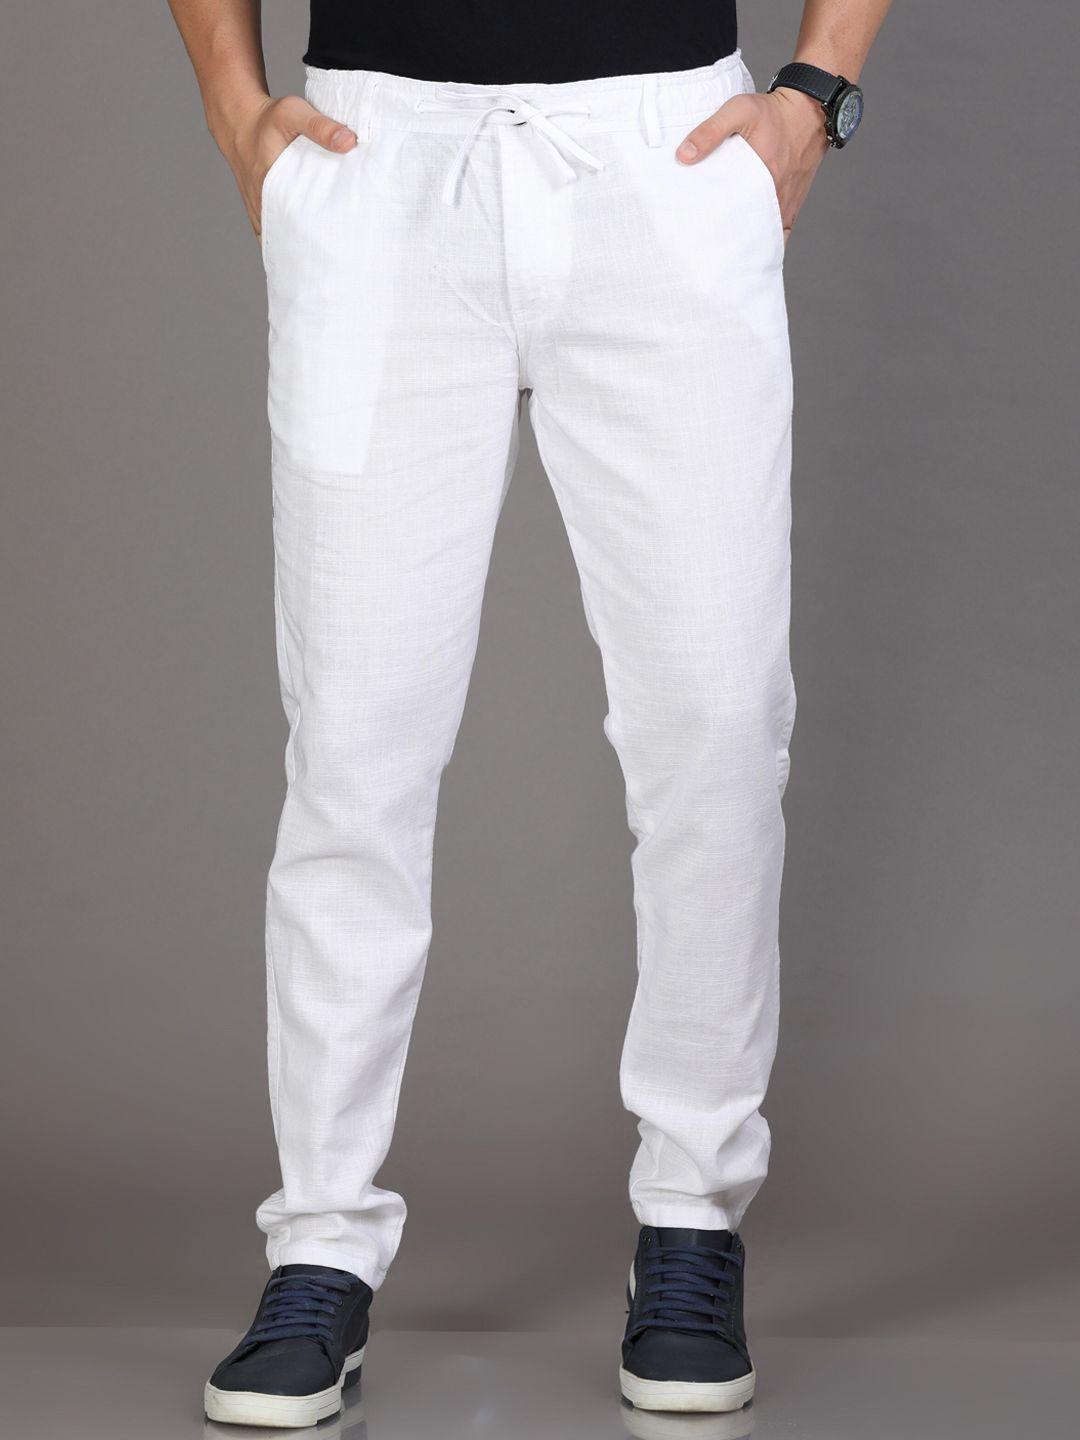 reslag-men-mid-rise-linen-trousers